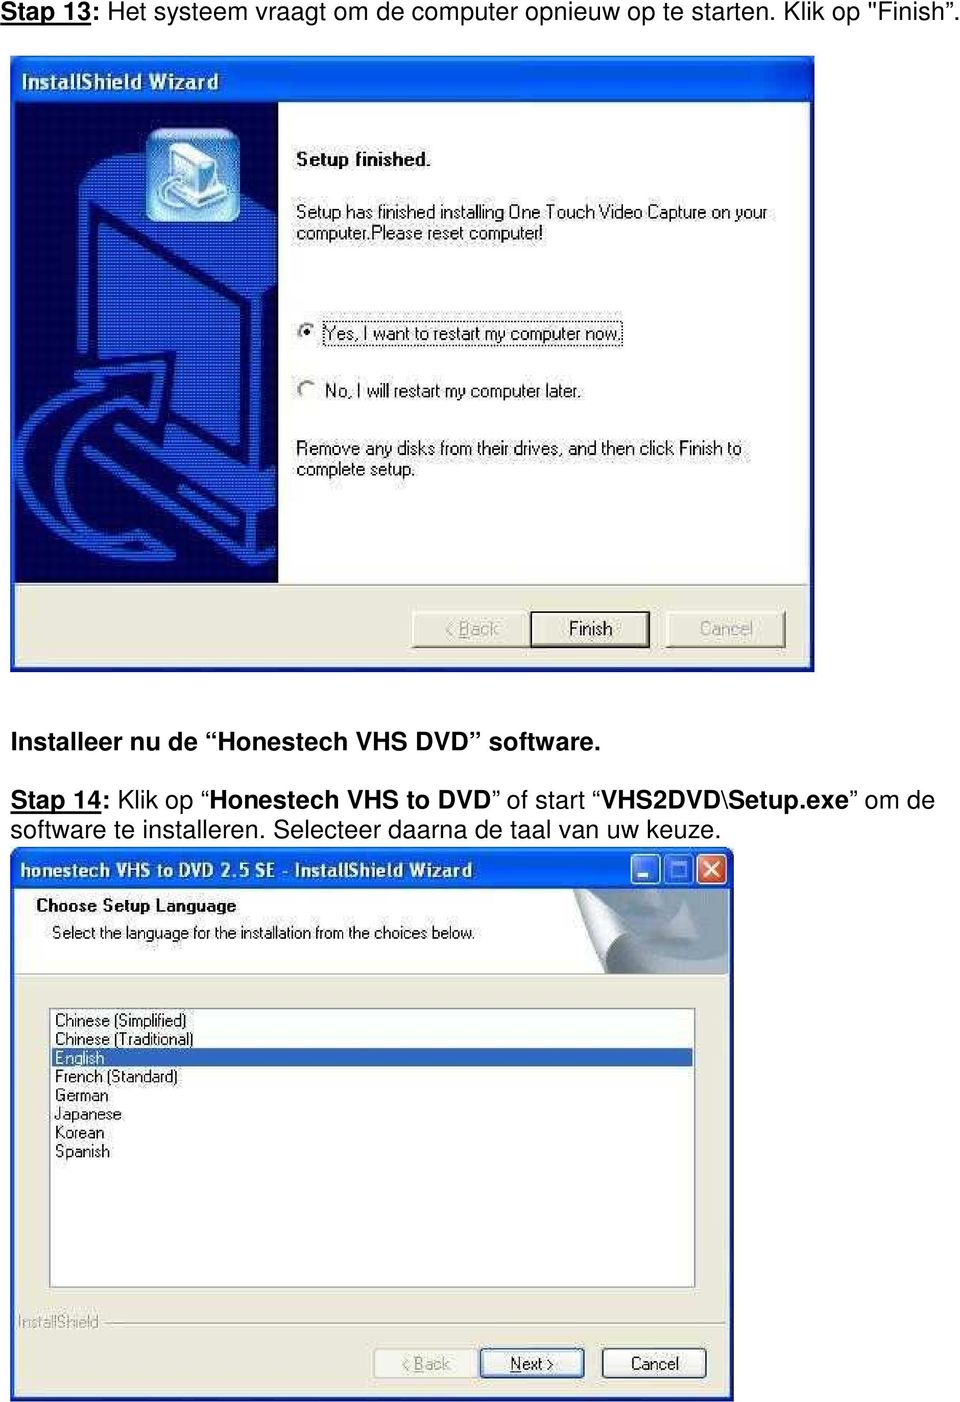 Stap 14: Klik op Honestech VHS to DVD of start VHS2DVD\Setup.